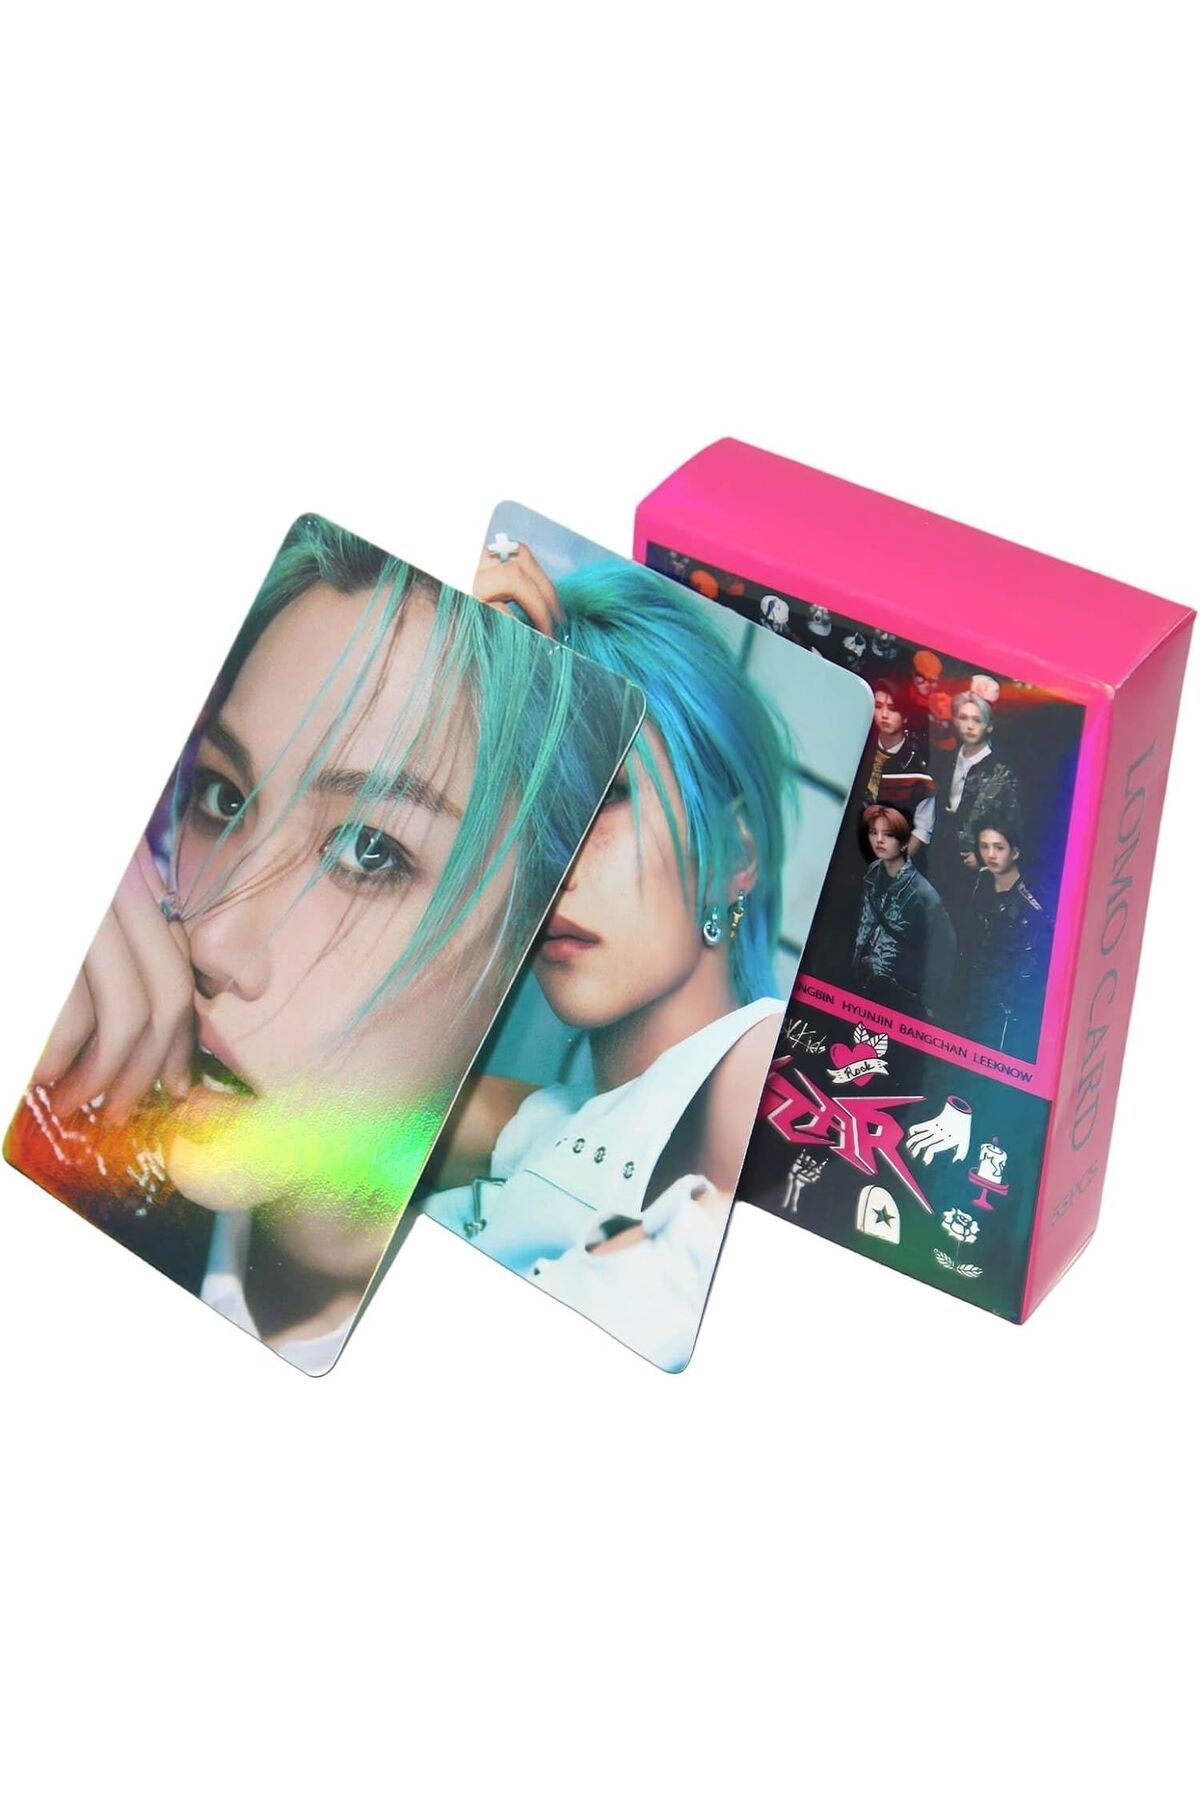 Kpop Dünyasi STRAY KIDS '' Rock Star '' Çift Yön Baskılı Hologramlı Laser/Lomo Card Seti